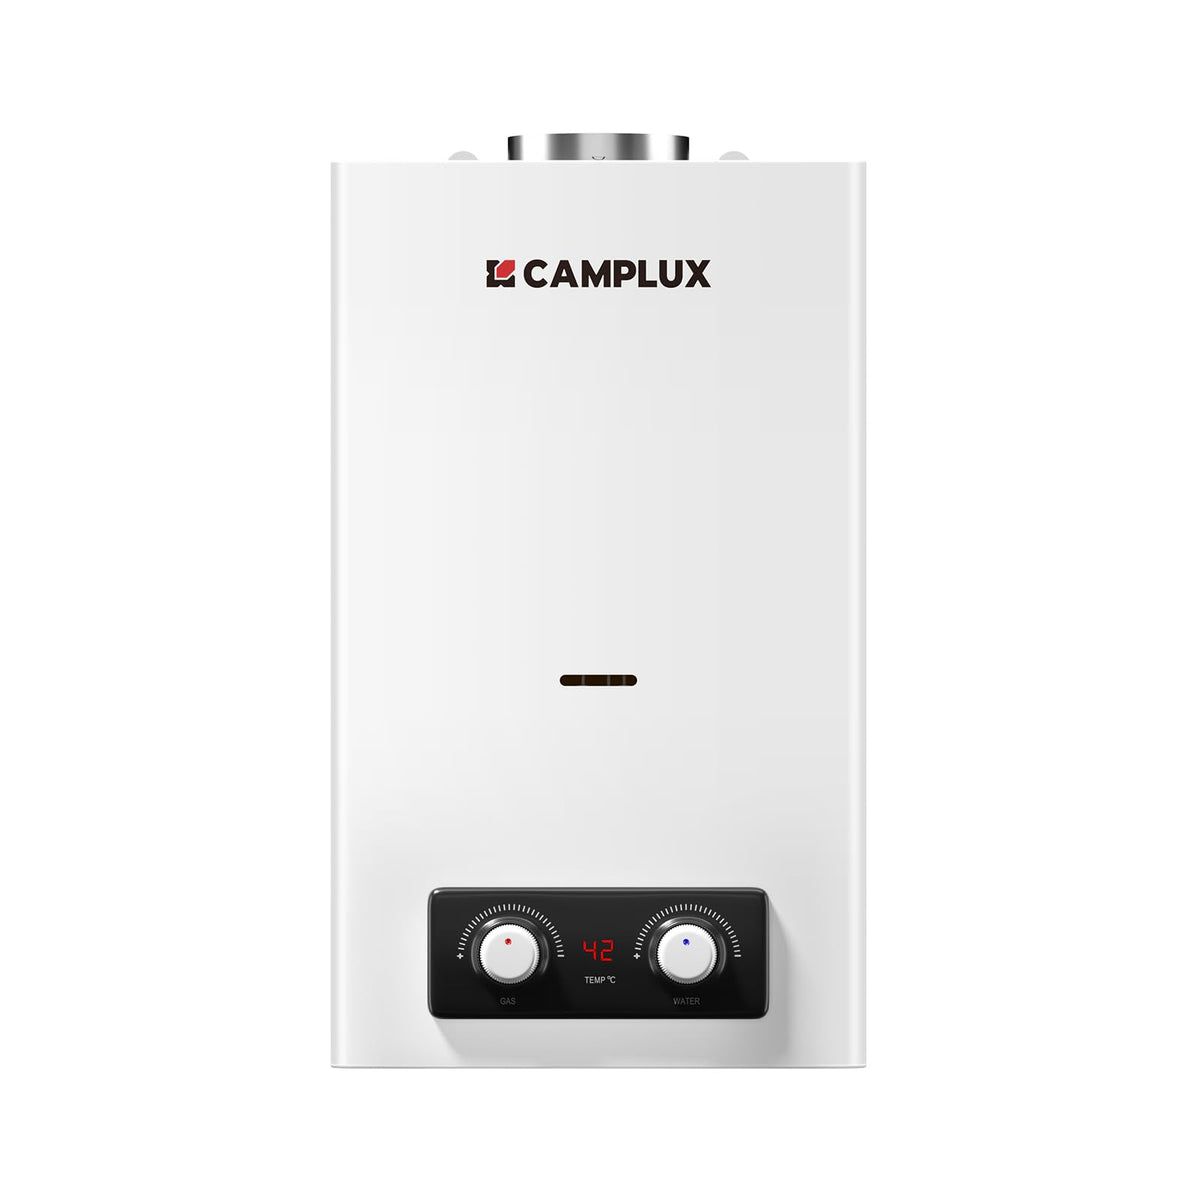 CAMPLUX BD300NG Gasdurchlauferhitzer 11 Liter, Low NOx/ErP, für Küche/Bad, 20mbar, Erdgas, 3V, 22kW [Energieklasse A]